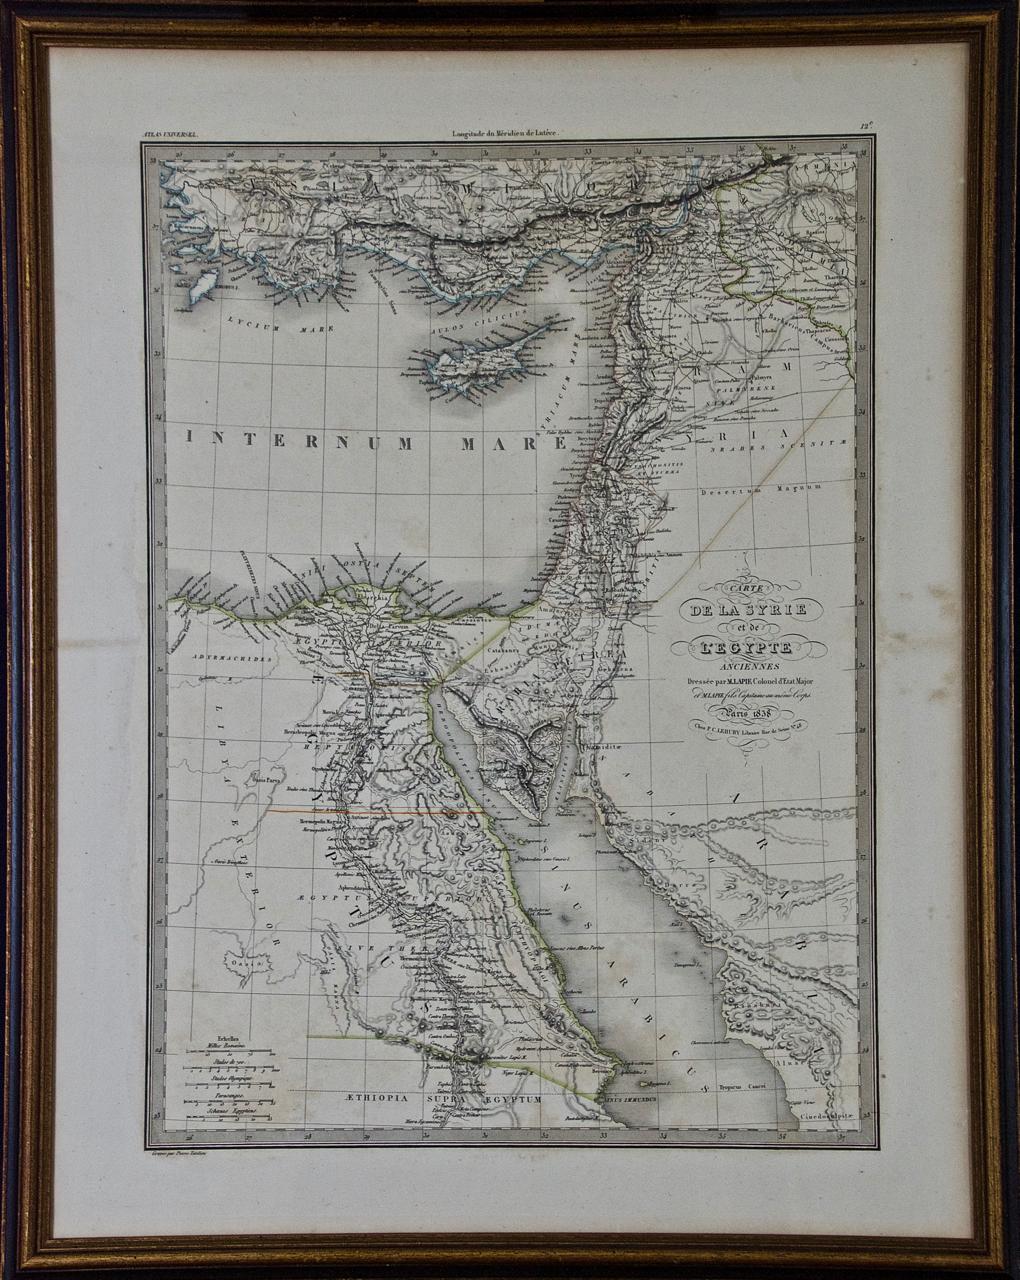 Pierre M. Lapie Landscape Print - Map of the Holy Land "Carte de la Syrie et de l'Egypte" by Pierre Lapie